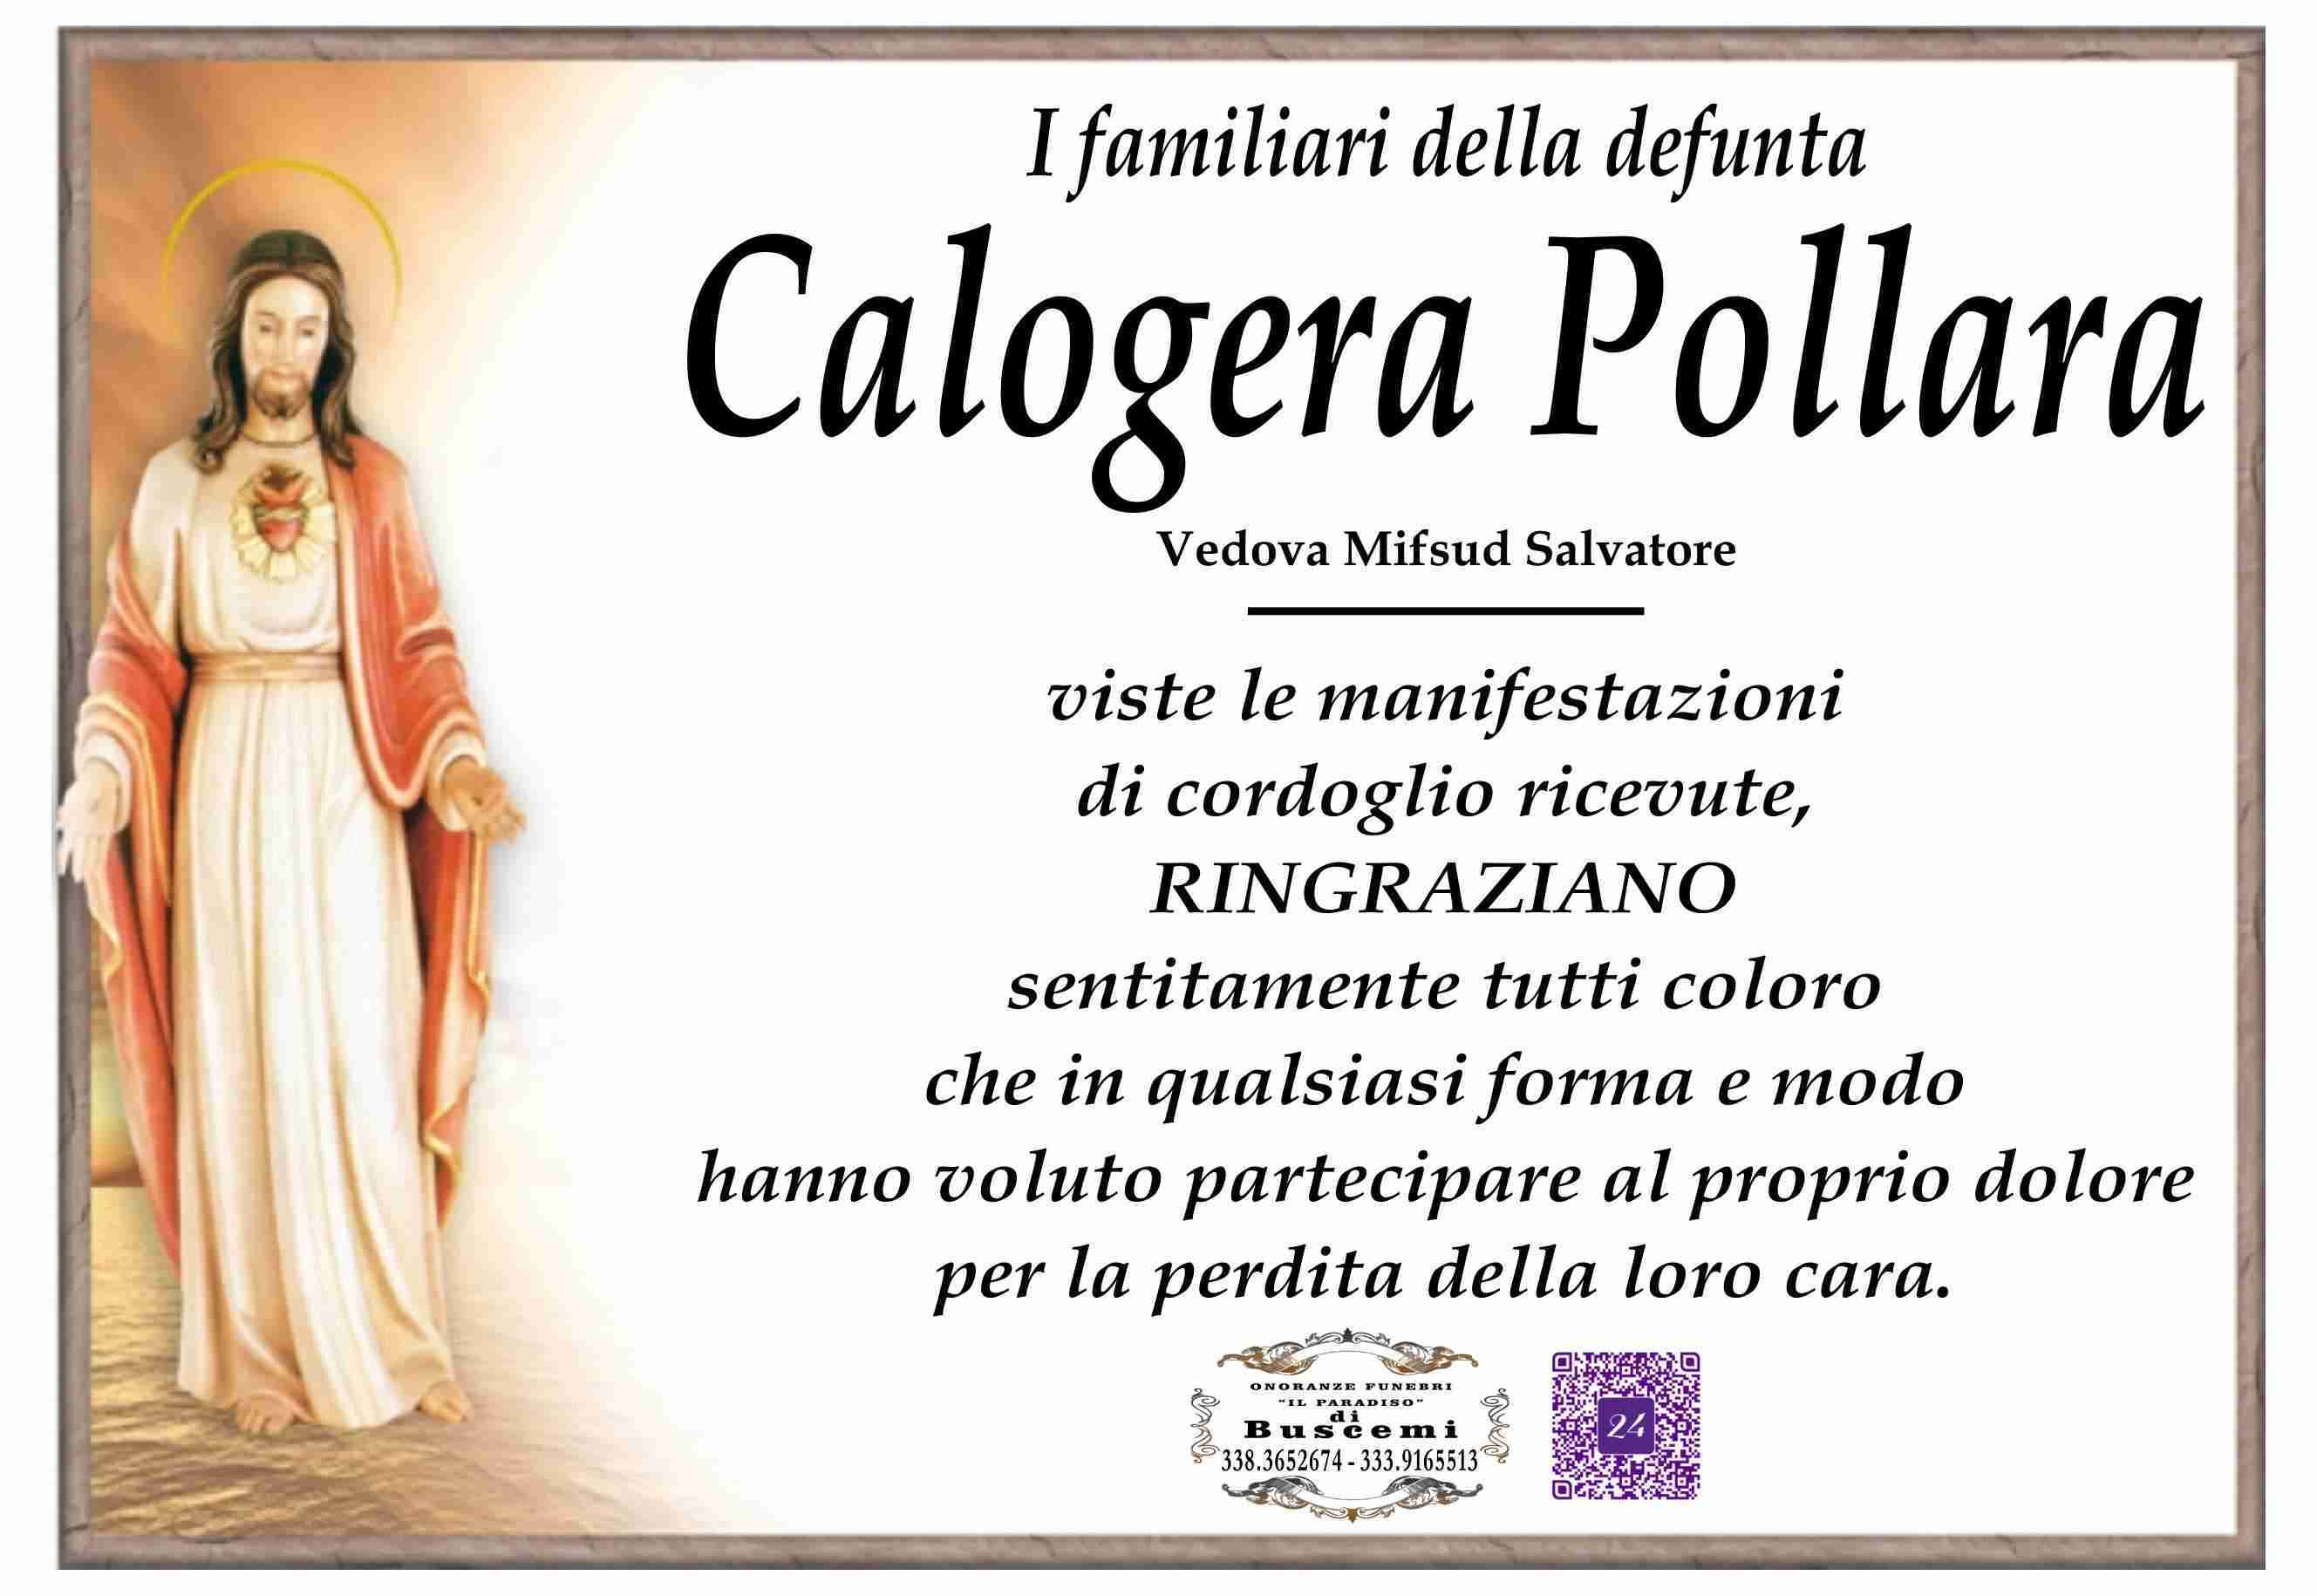 Calogera Pollara